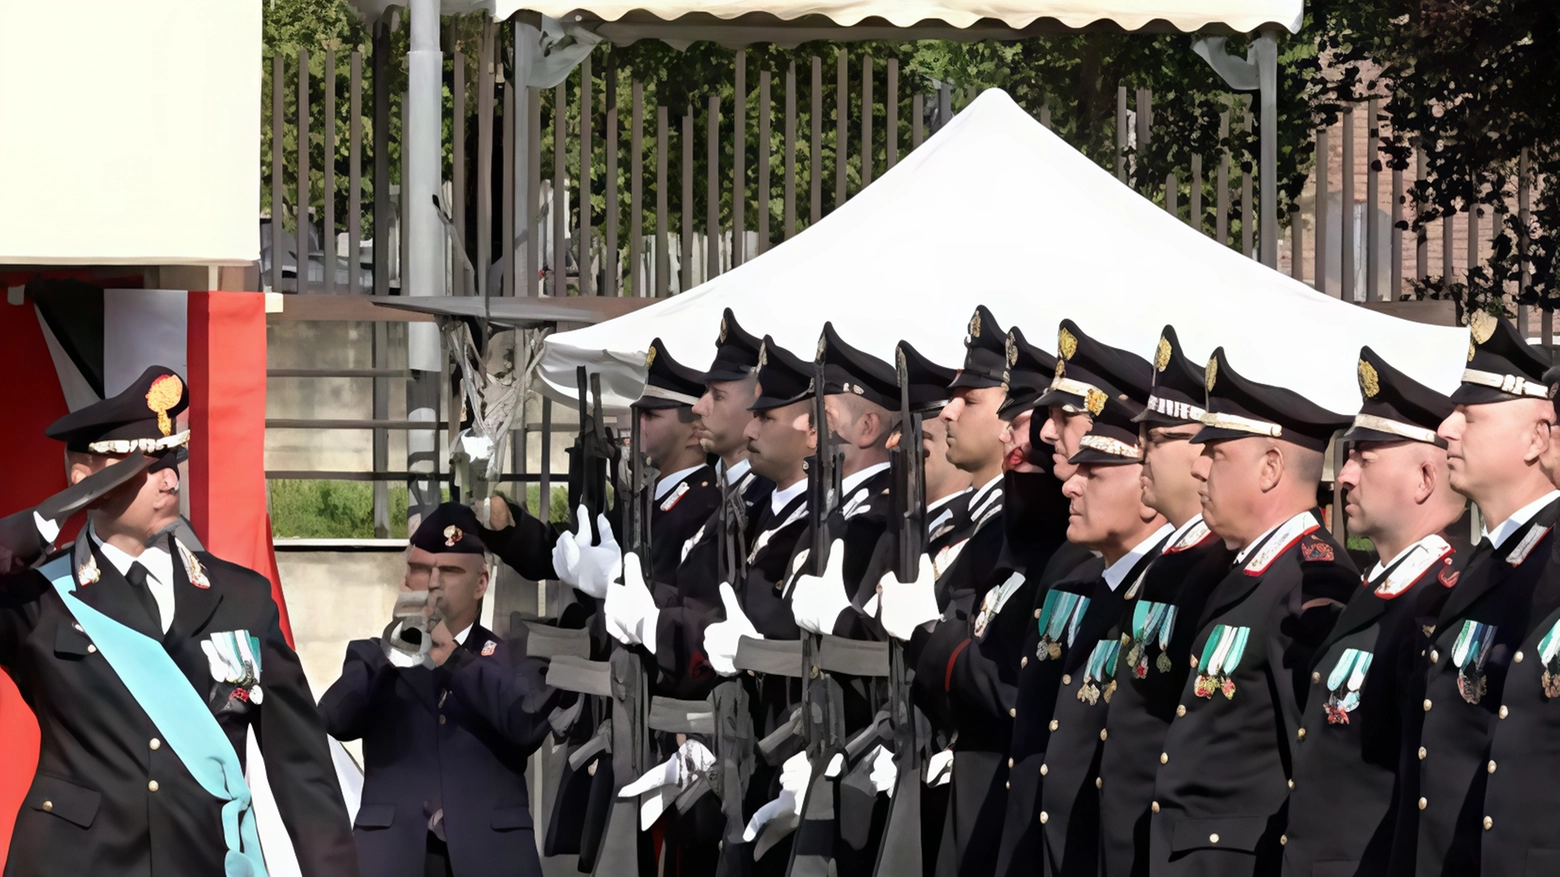 La festa dei carabinieri: "Massimo impegno contro reati e violenze"